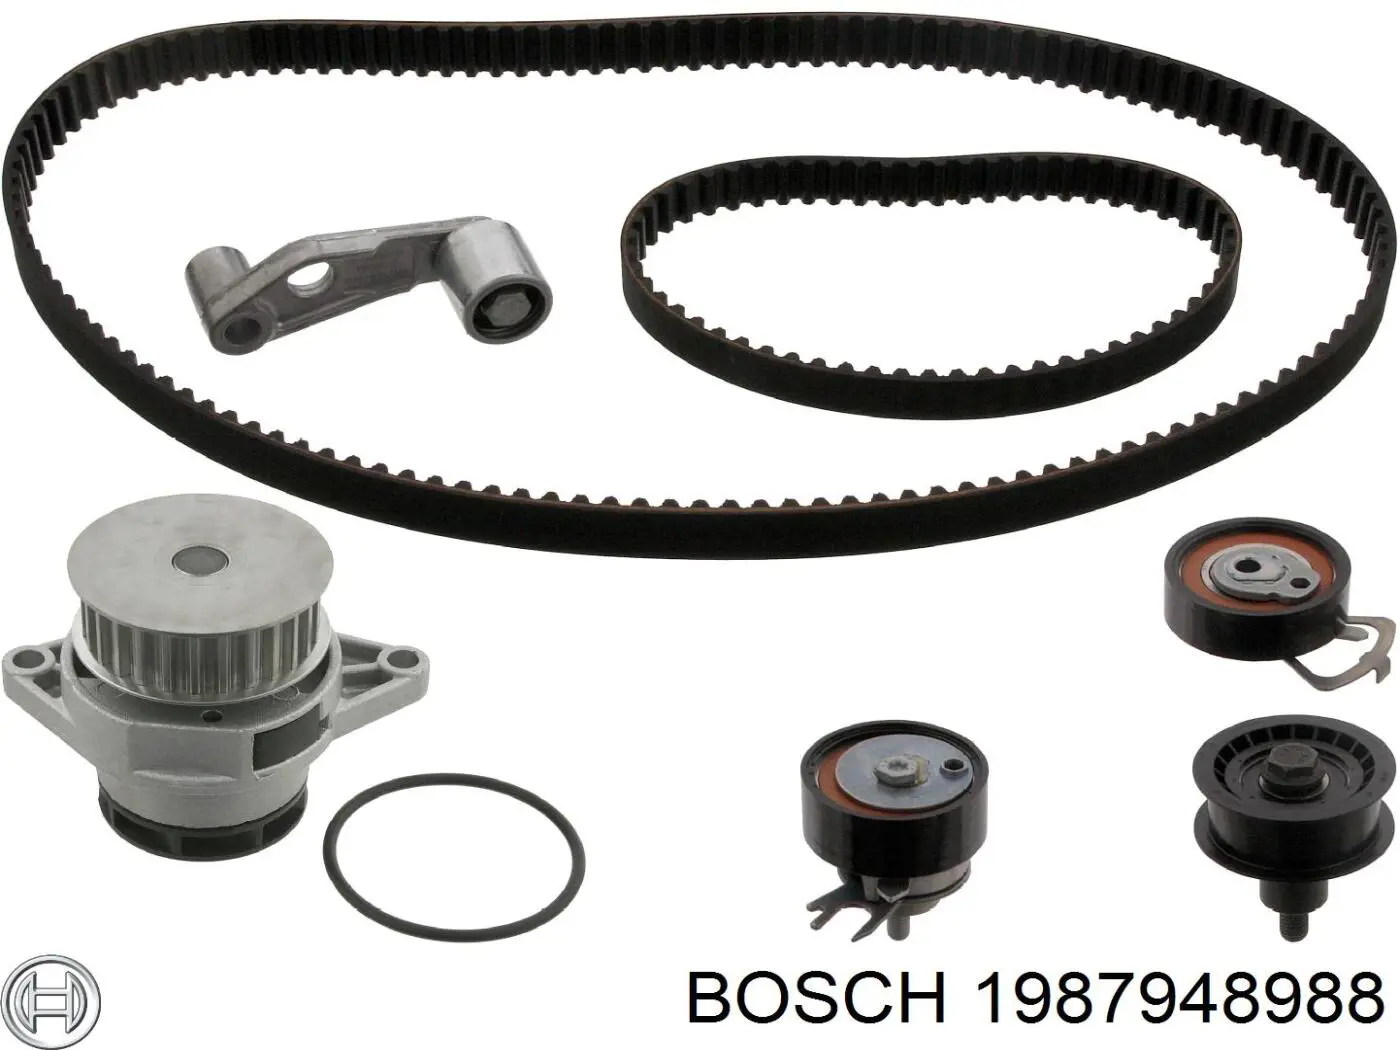 1987948988 Bosch kit de distribución